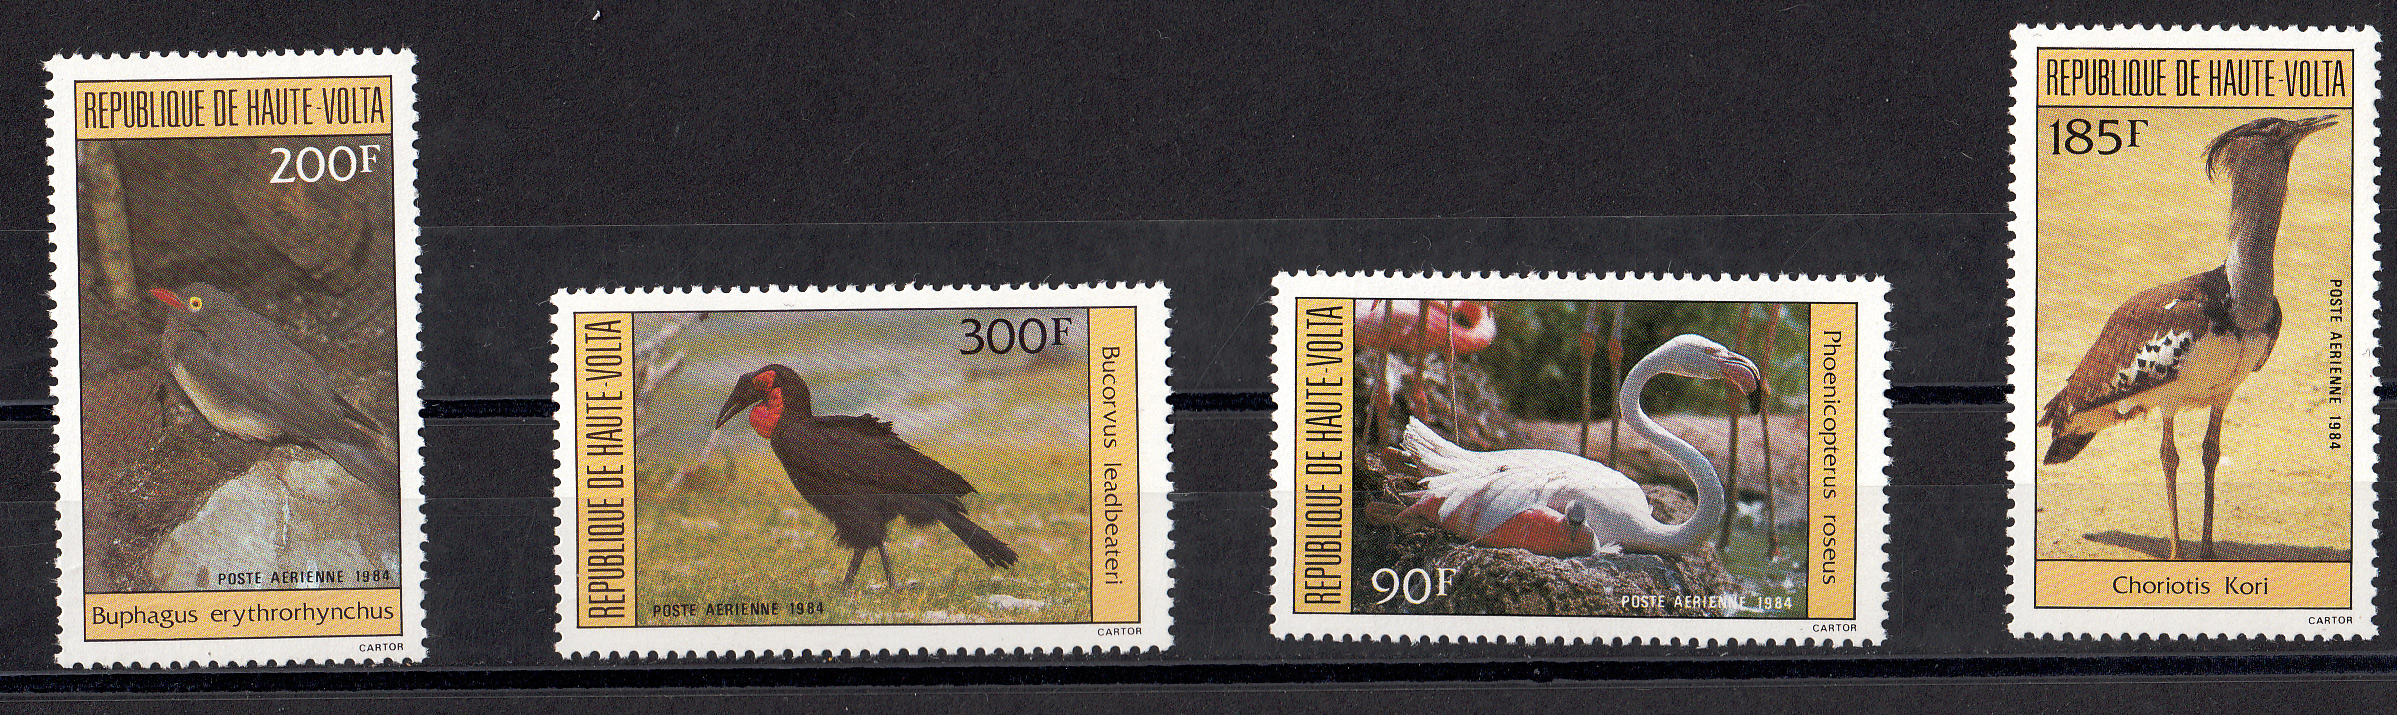 ALTO VOLTA 1984 francobolli serie completa nuova Yvert e Tellier A256/9